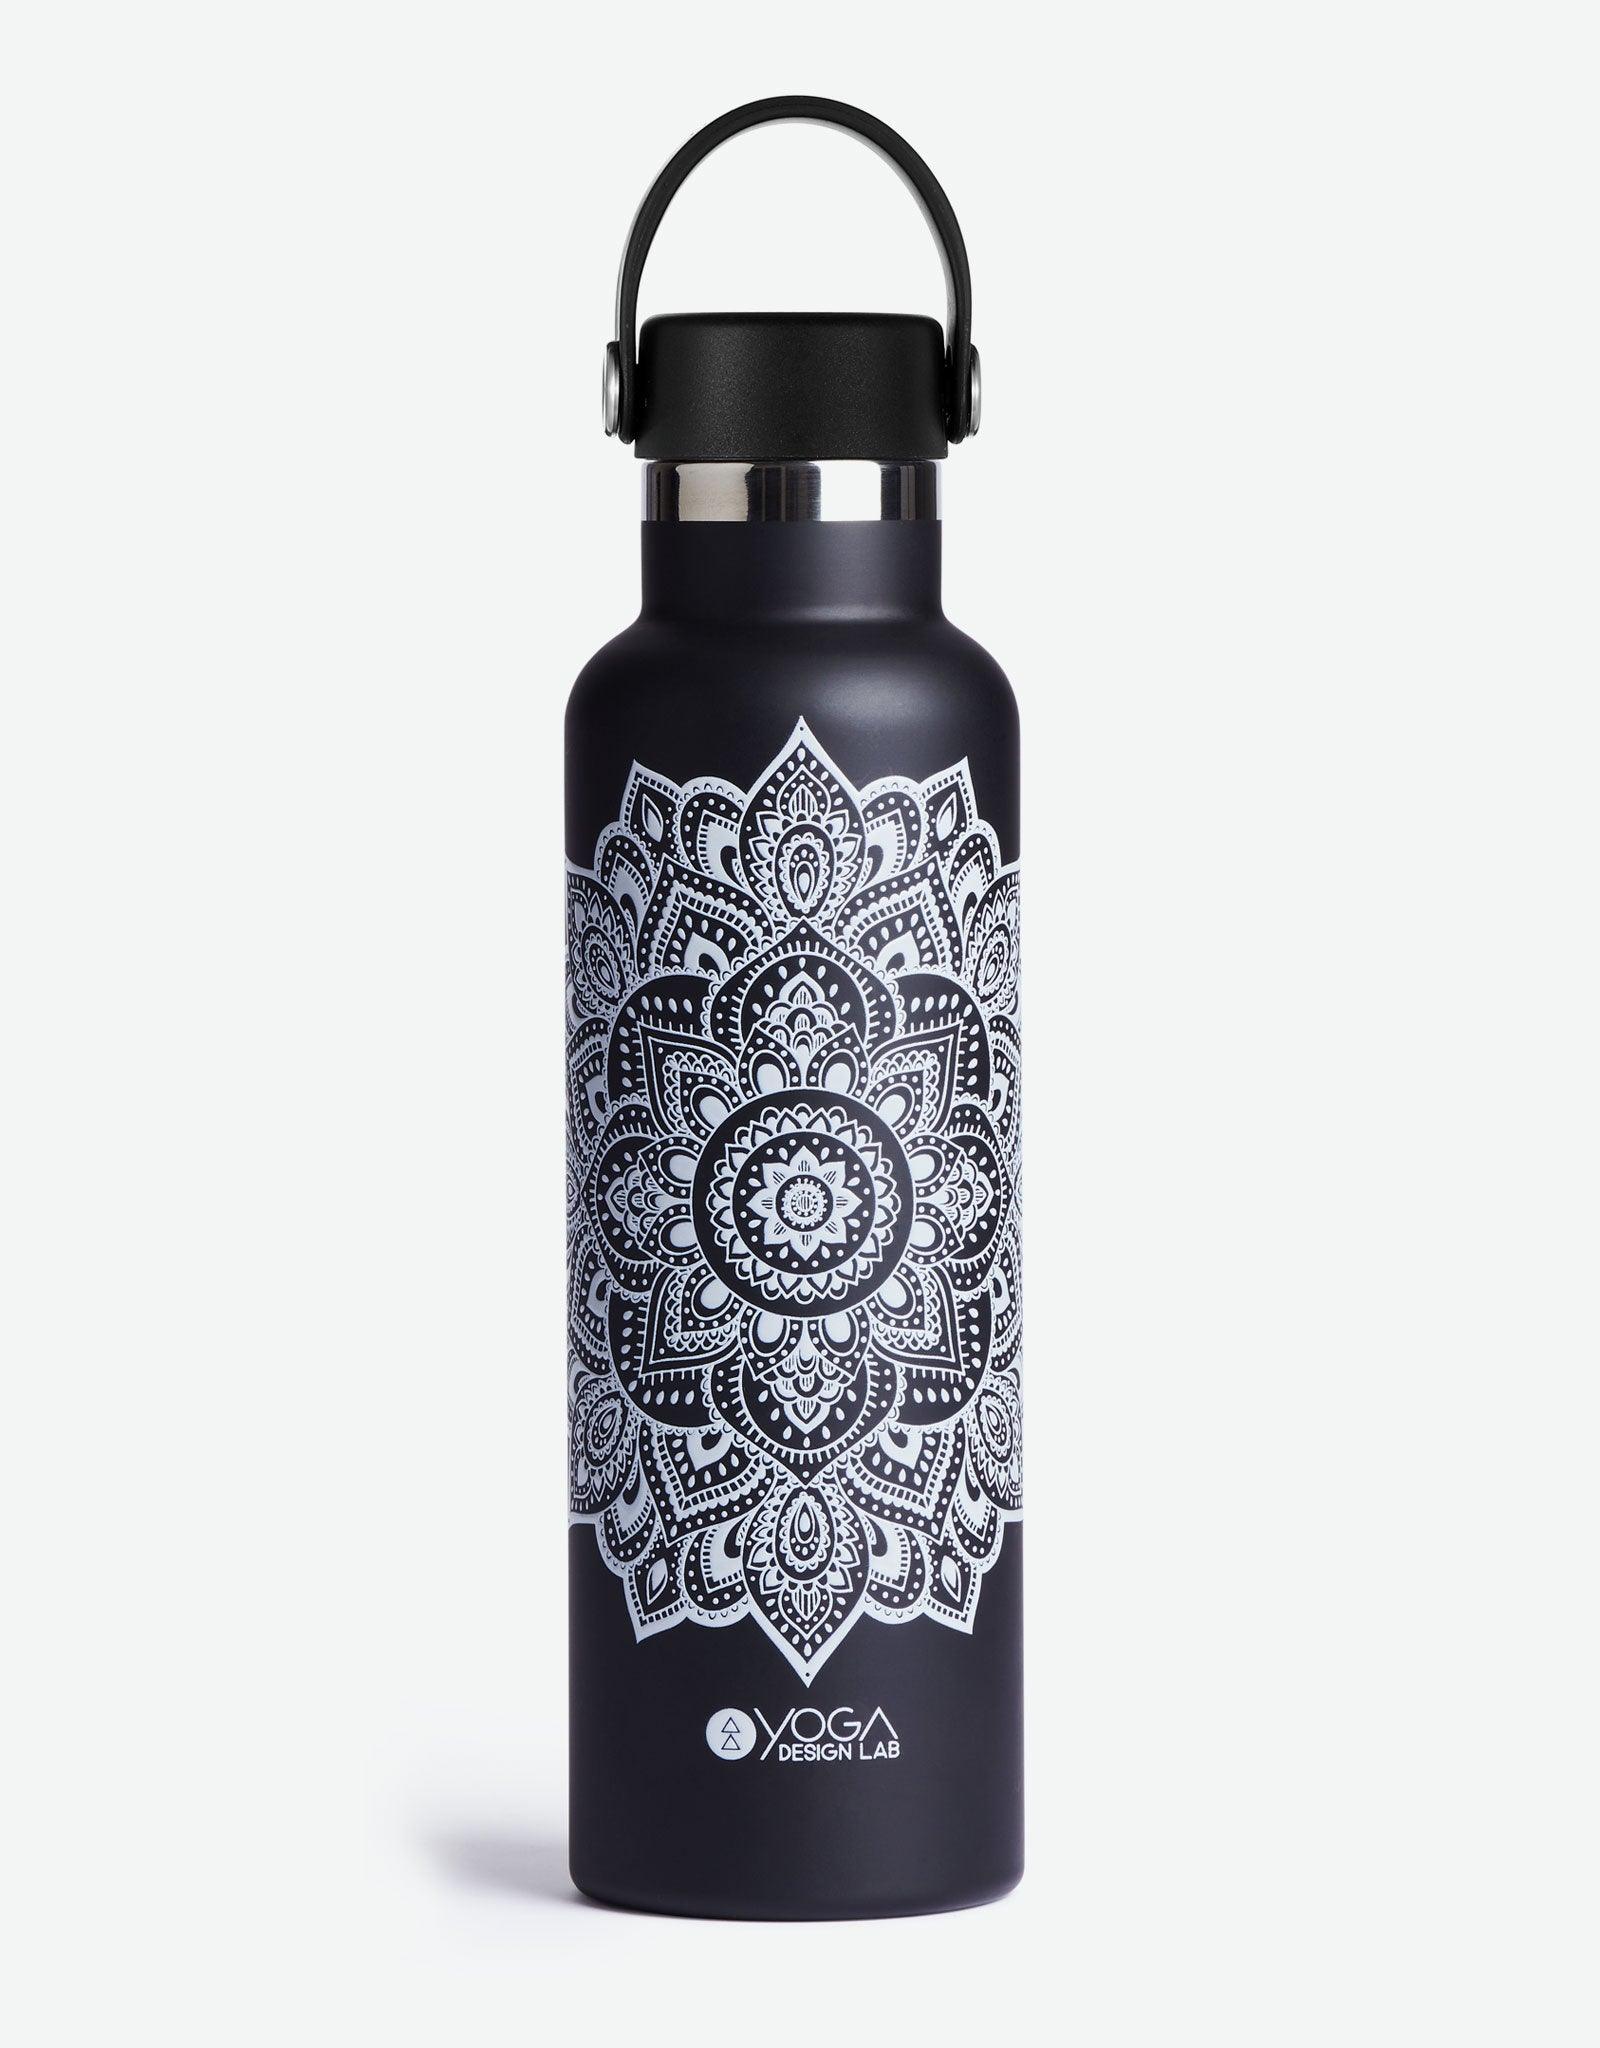 Yoga Water - Bottle - Mandala - White - Insulated Water Bottle & Stainless Steel Bottles. - Yoga Design Lab 